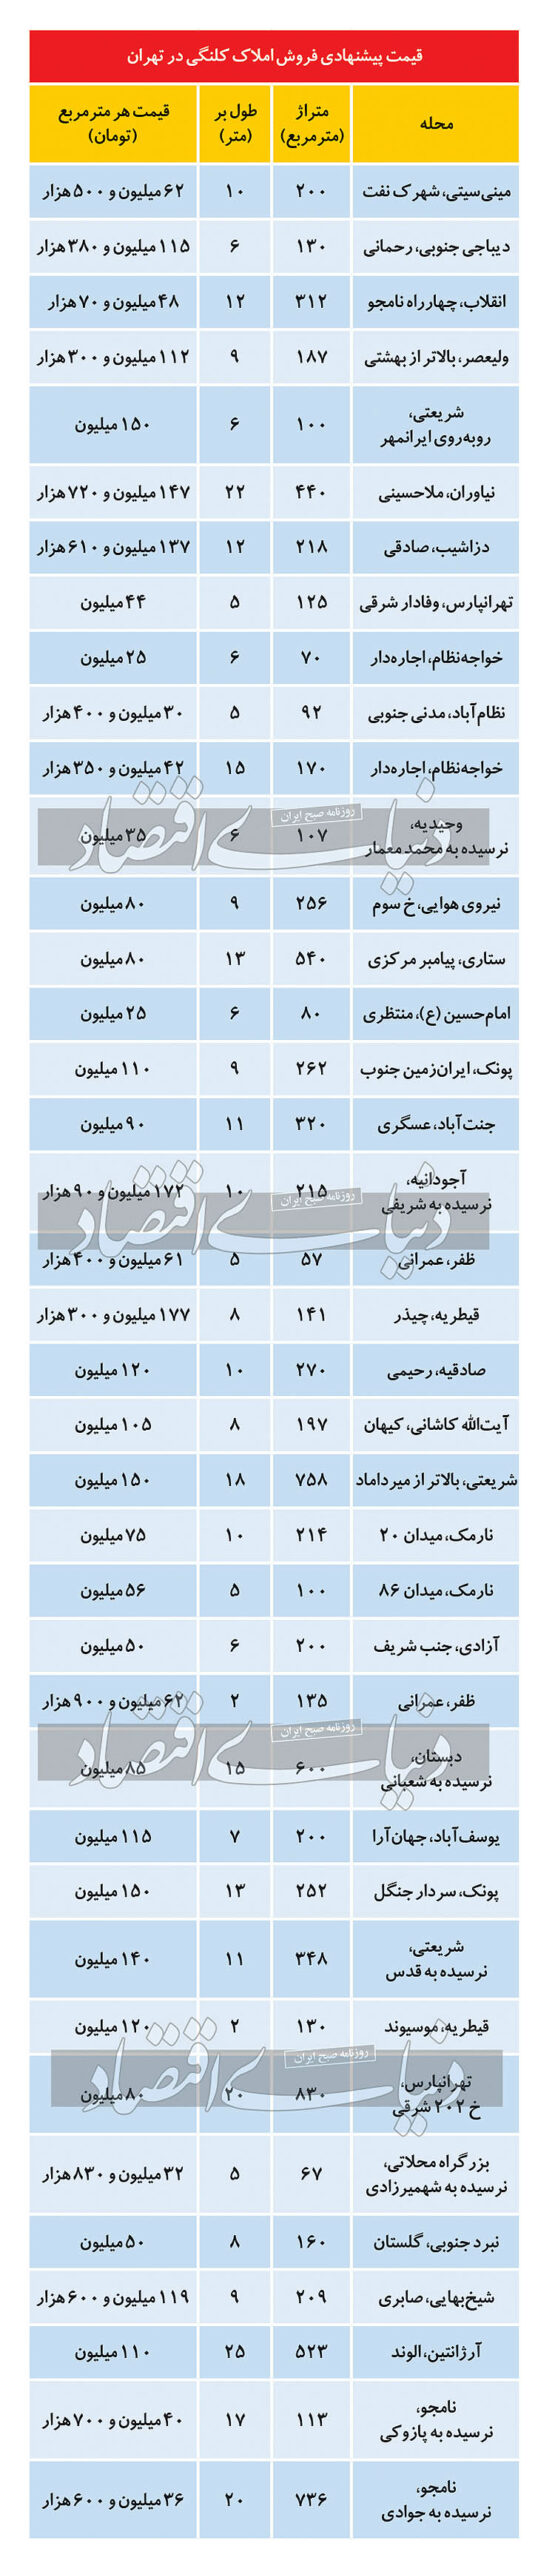 قیمت روز بازار معاملات آپارتمان مسکونی در تهران